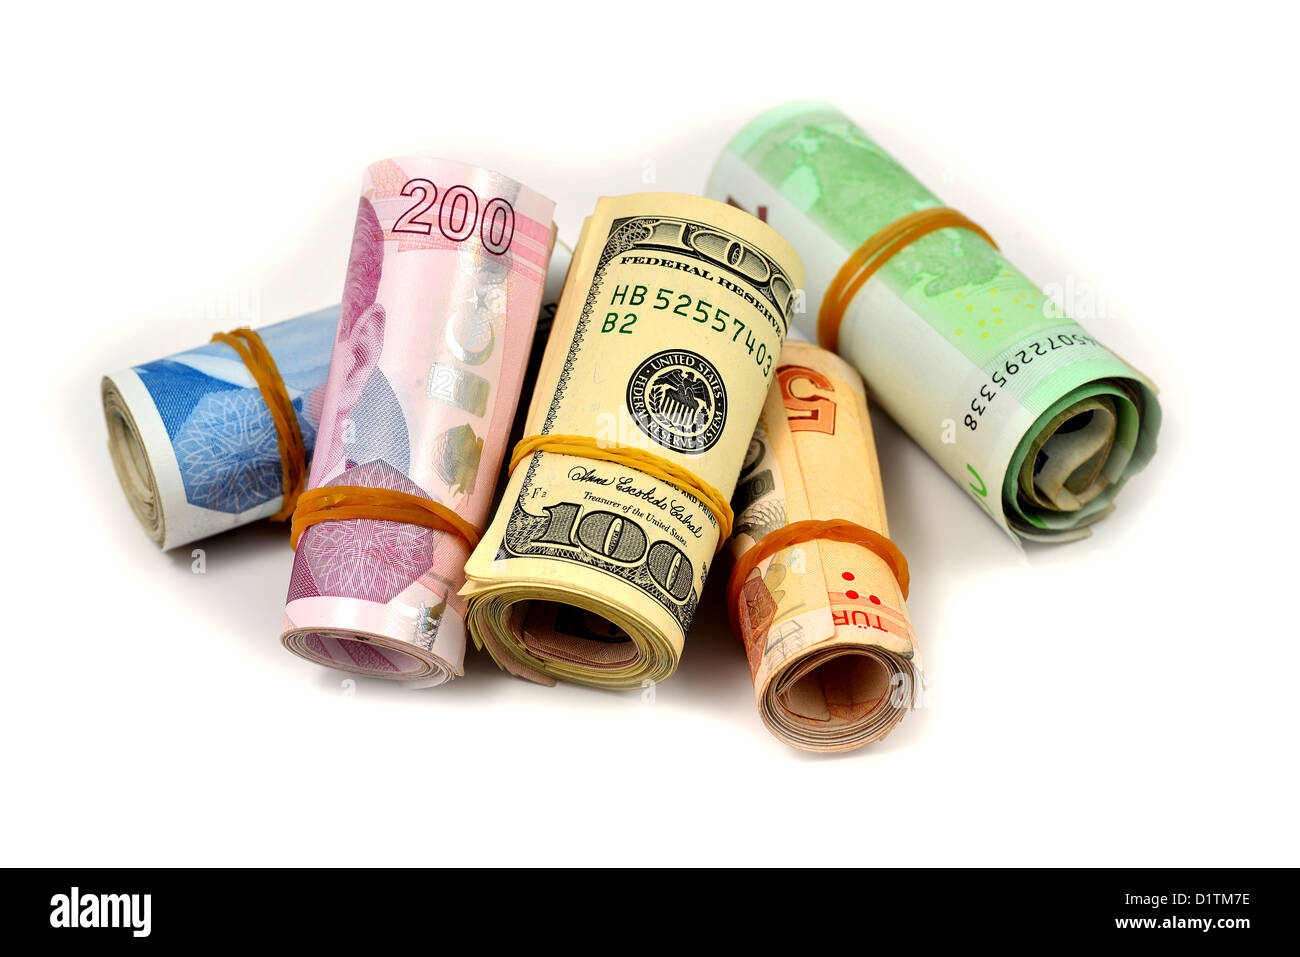 L'argent, des dollars, de l'argent turc isolé sur fond blanc Banque D'Images